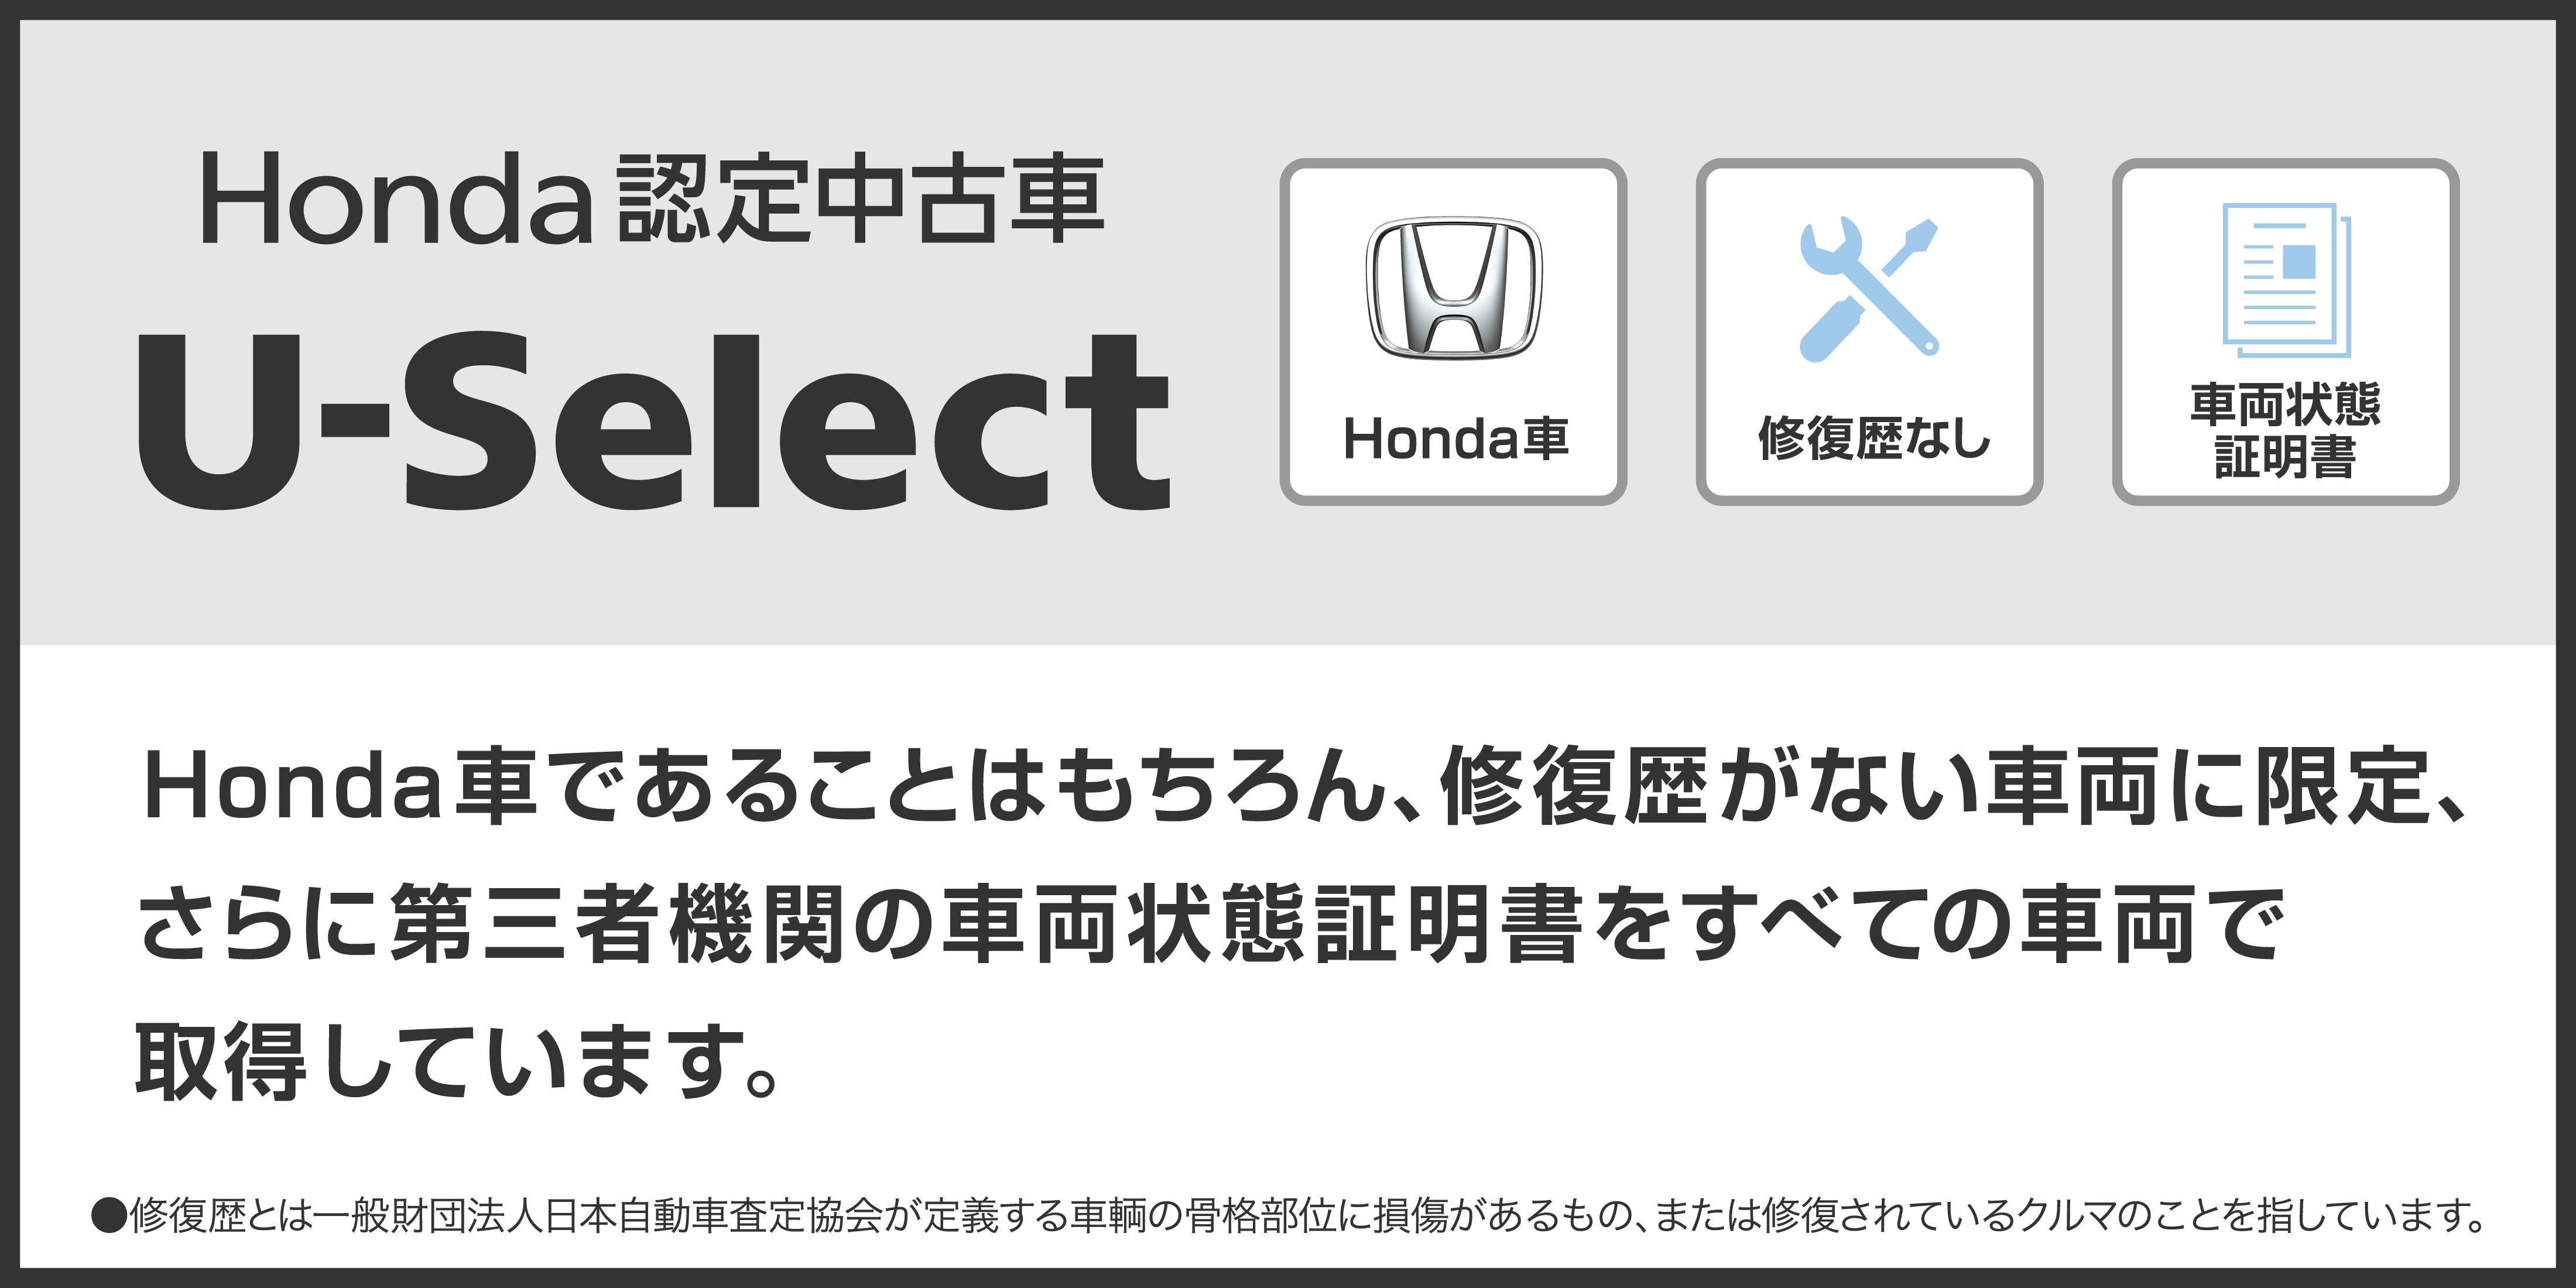 Honda 認定中古車 千葉県honda Cars総合サイト